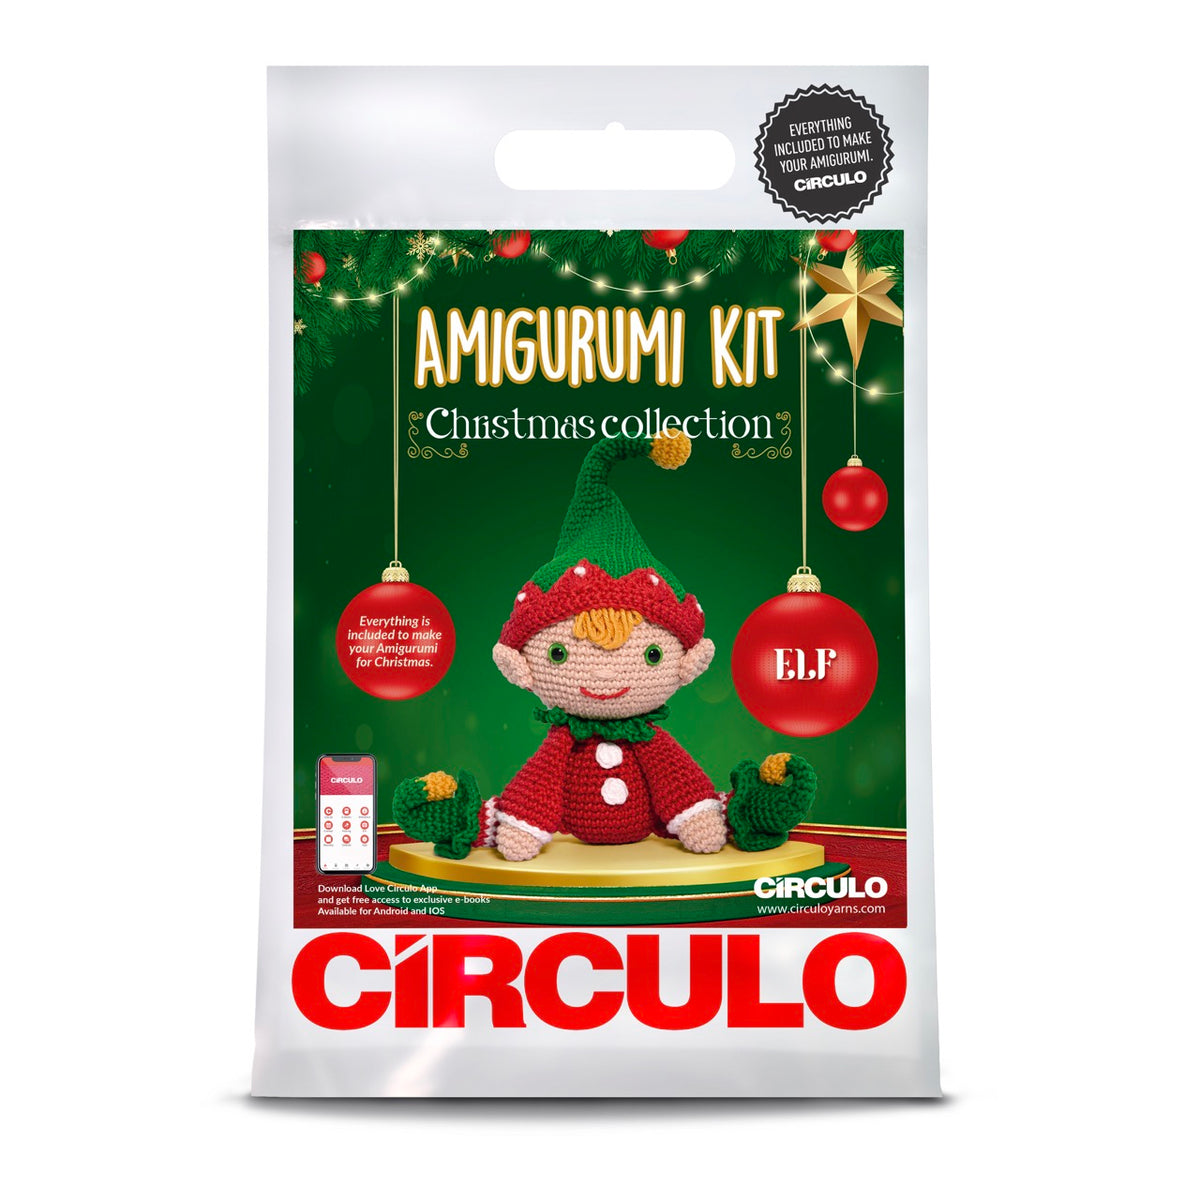 Circulo Amigurumi Christmas Kit